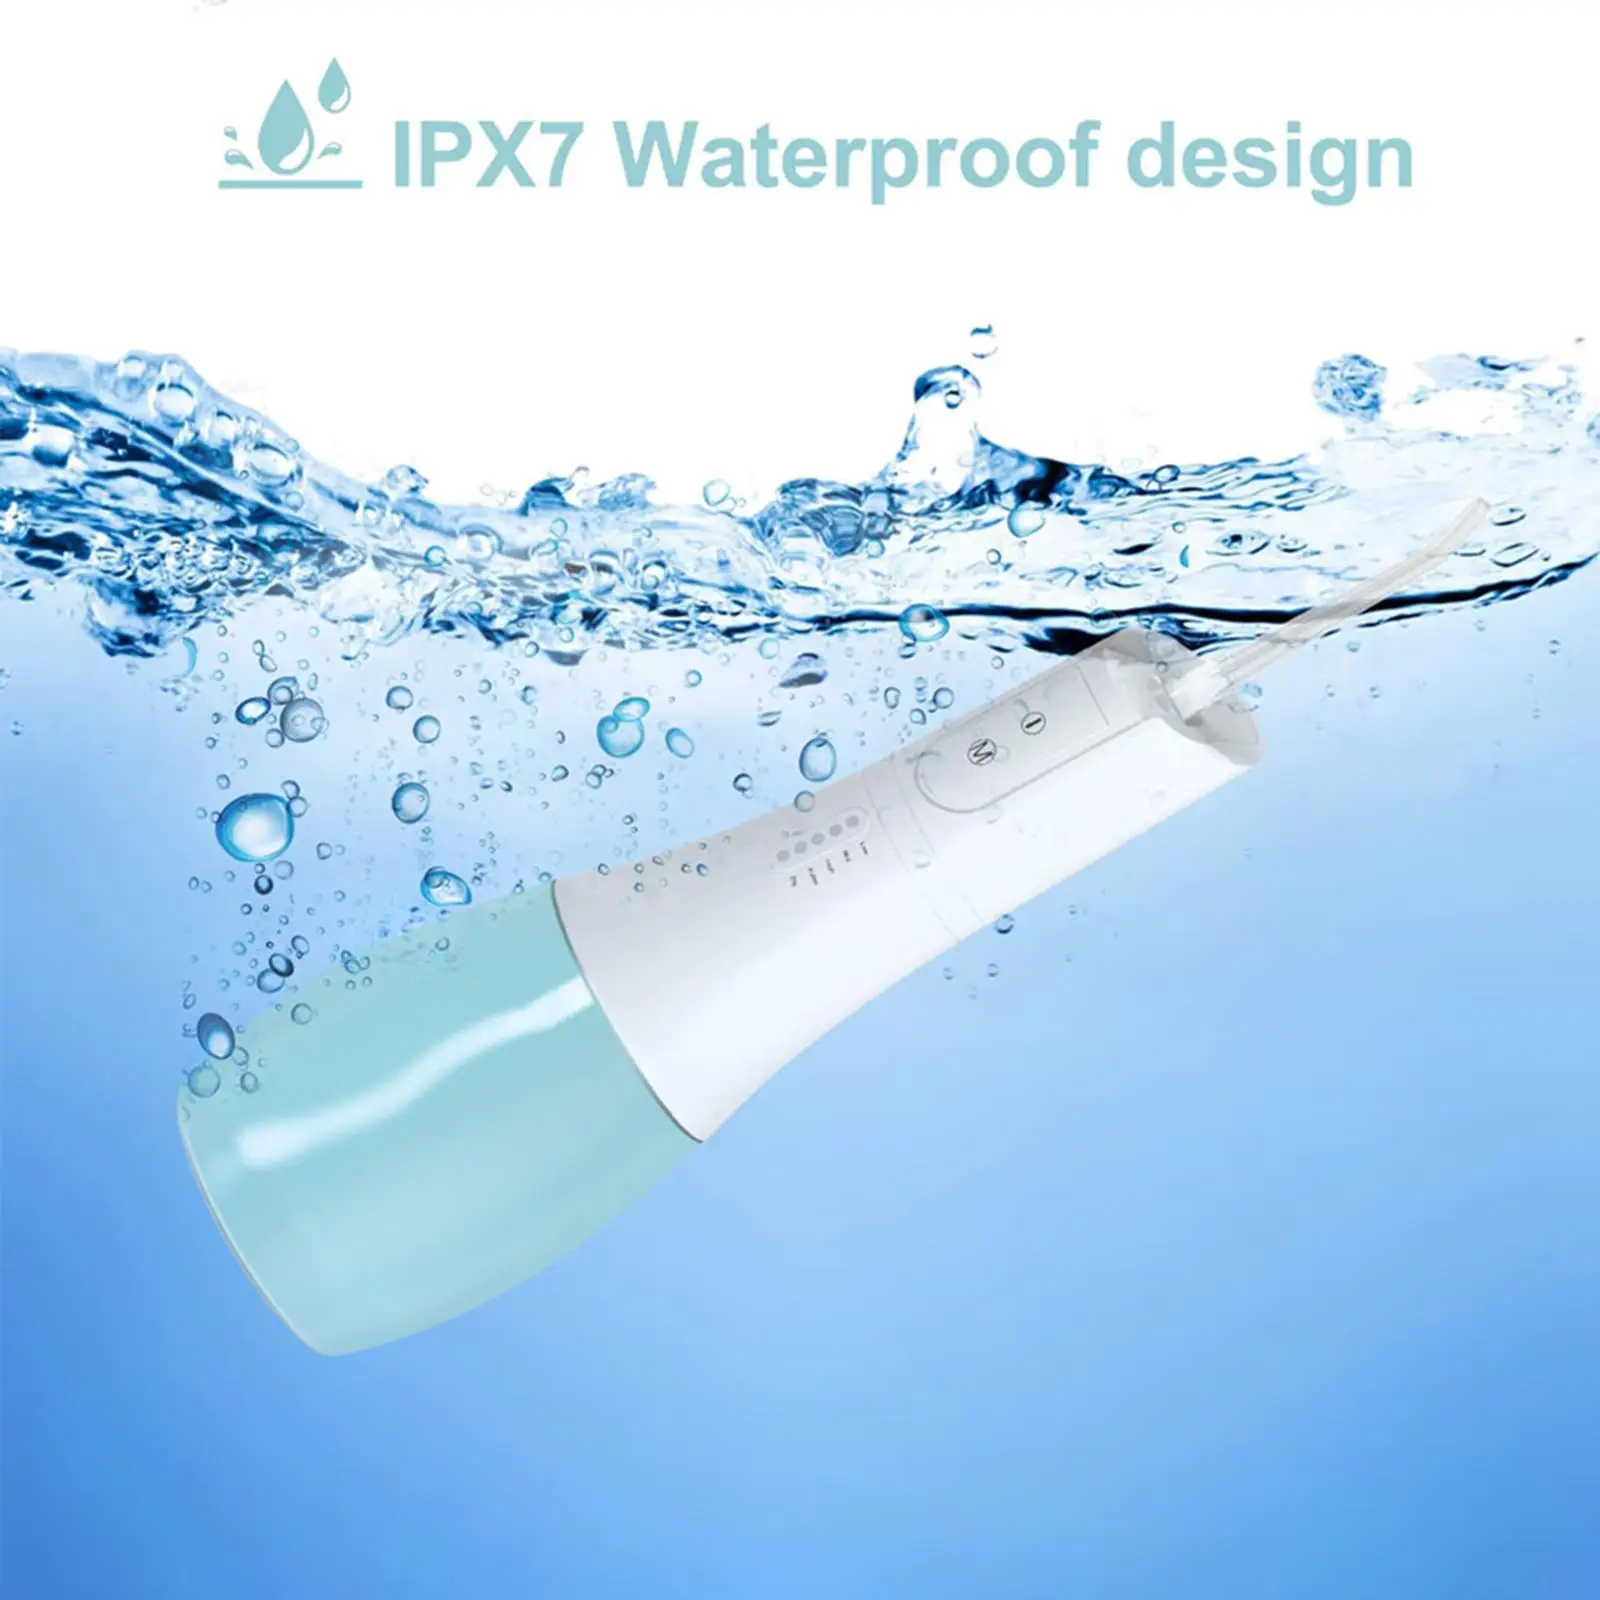 Water Flosser IPX7 Waterproof Floss Cleaner for Teeth Clean Gums Braces Care Travel